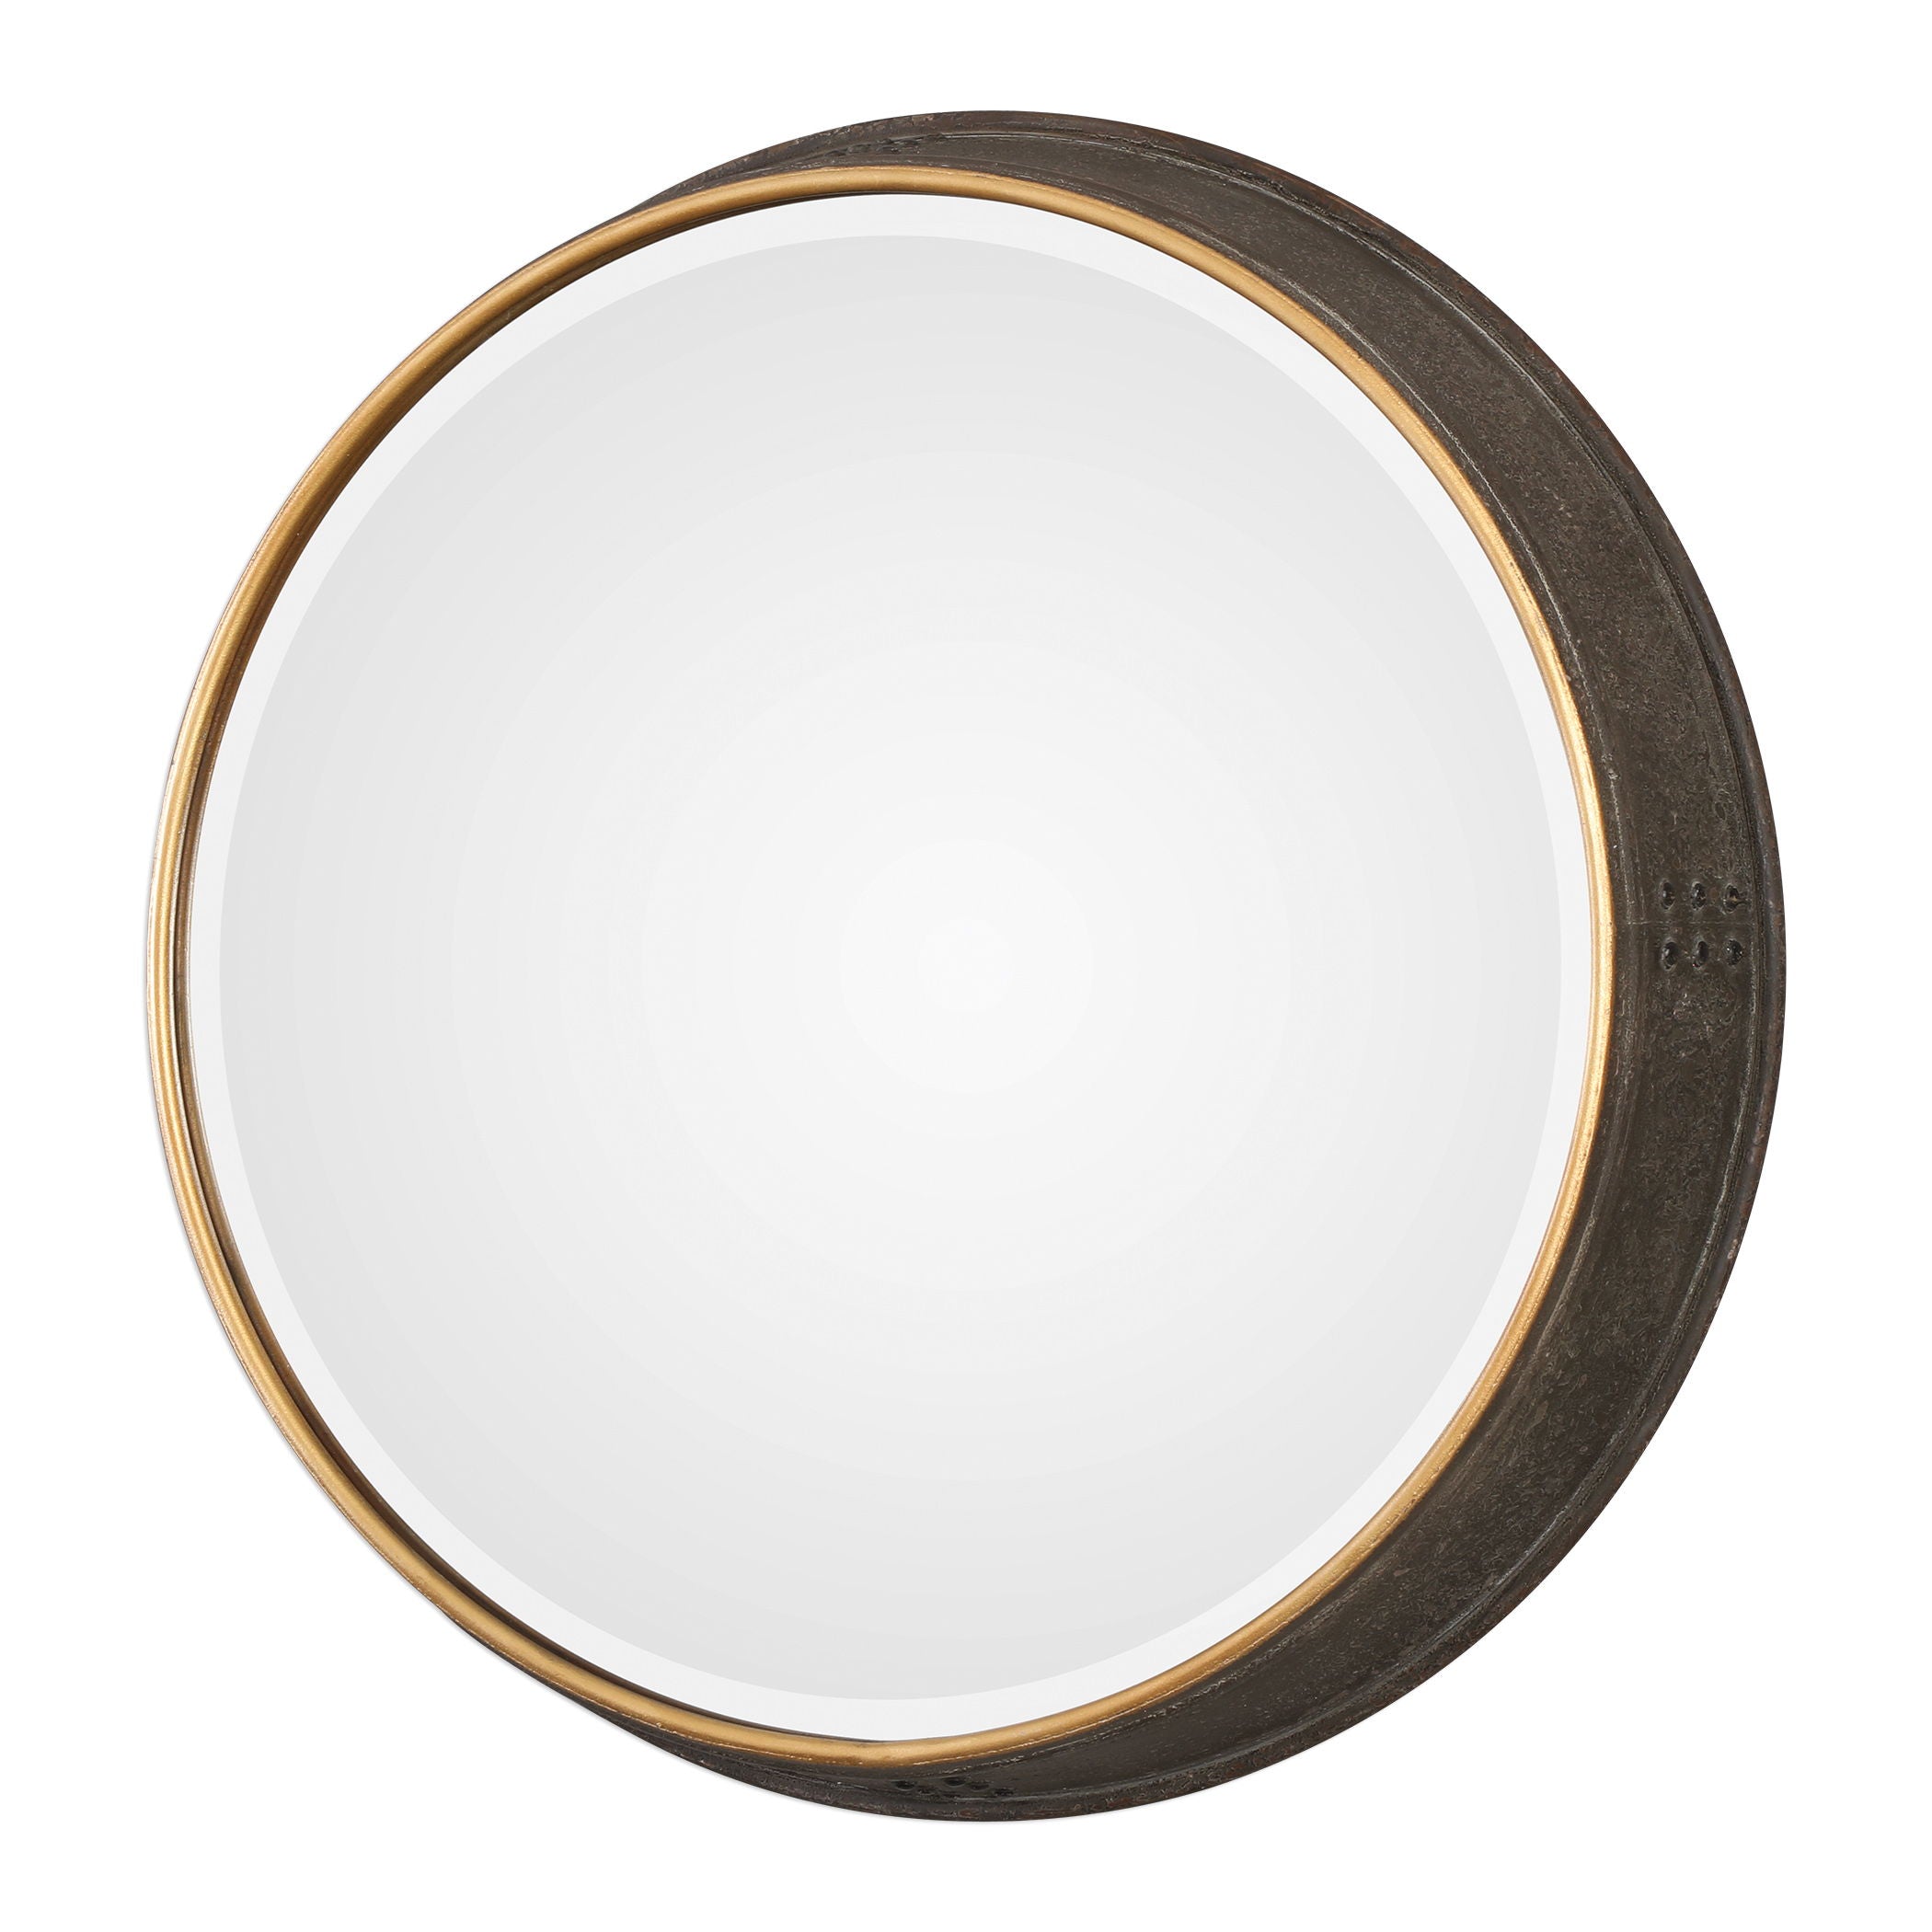 Sturdivant - Round Mirror - Antiqued Gold